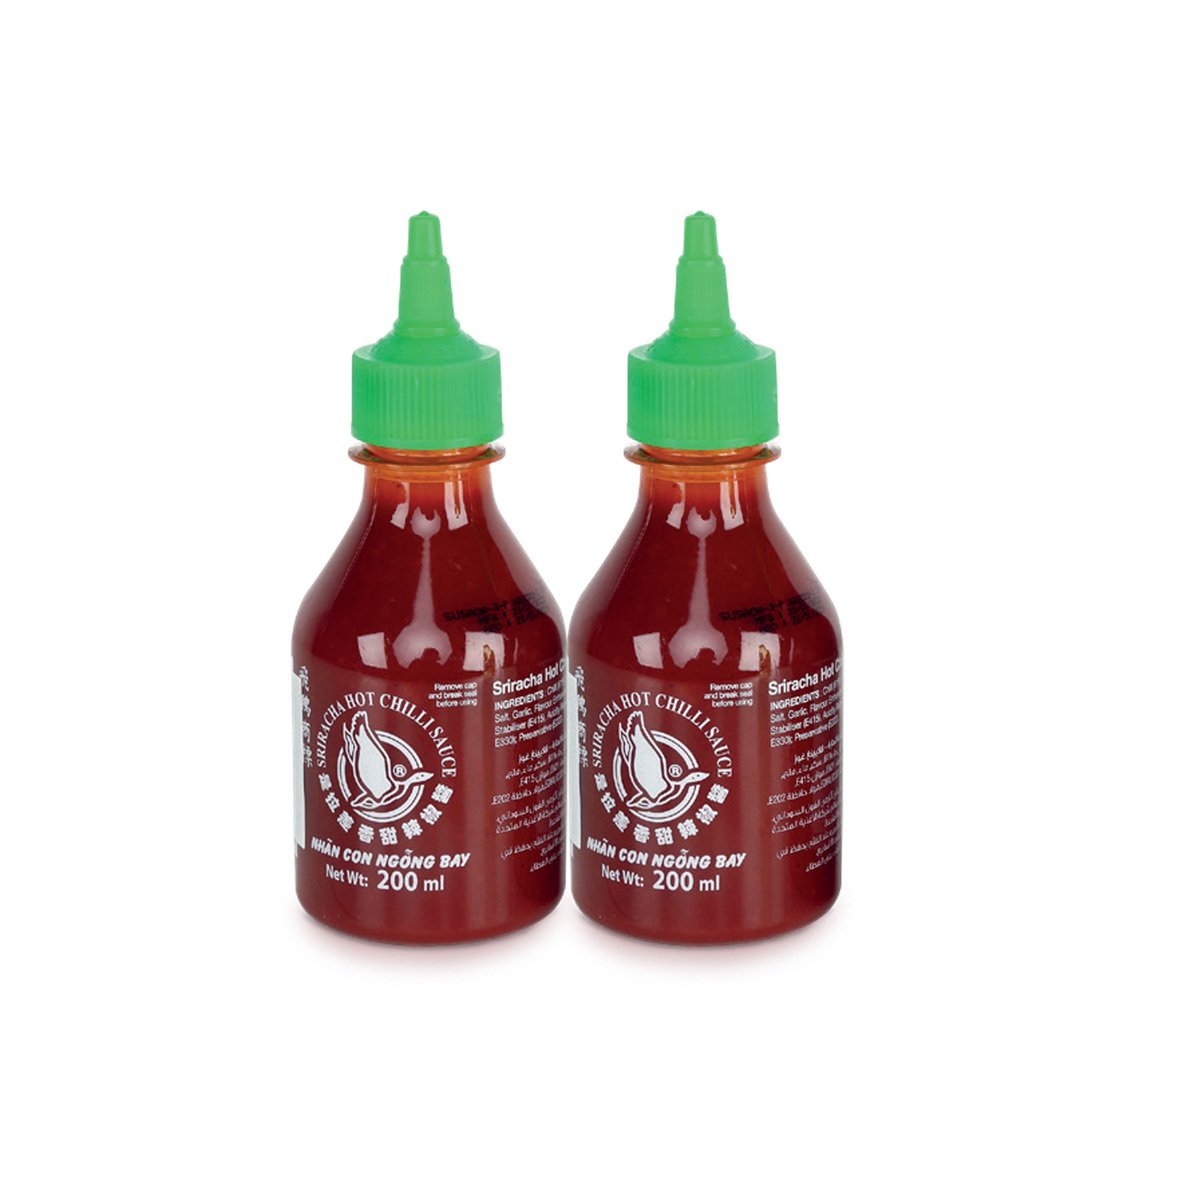 Sriracha Hot Chilli Sauce Value Pack 2 x 200 ml